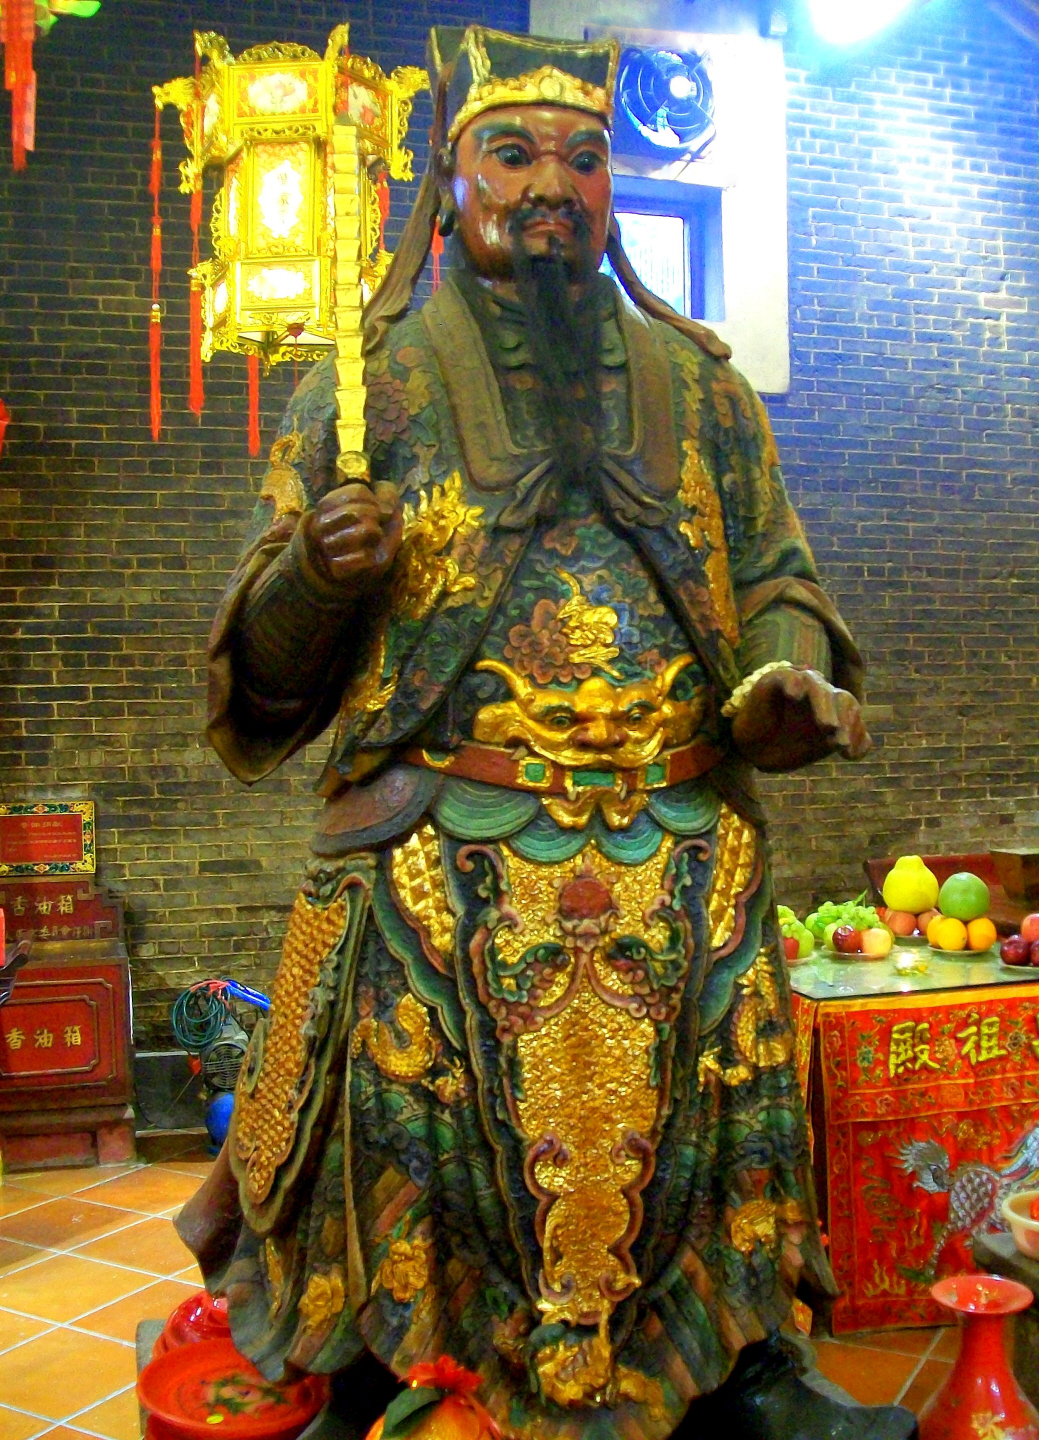 Man Mo Temple Dedicated to Literature - Hong Kong